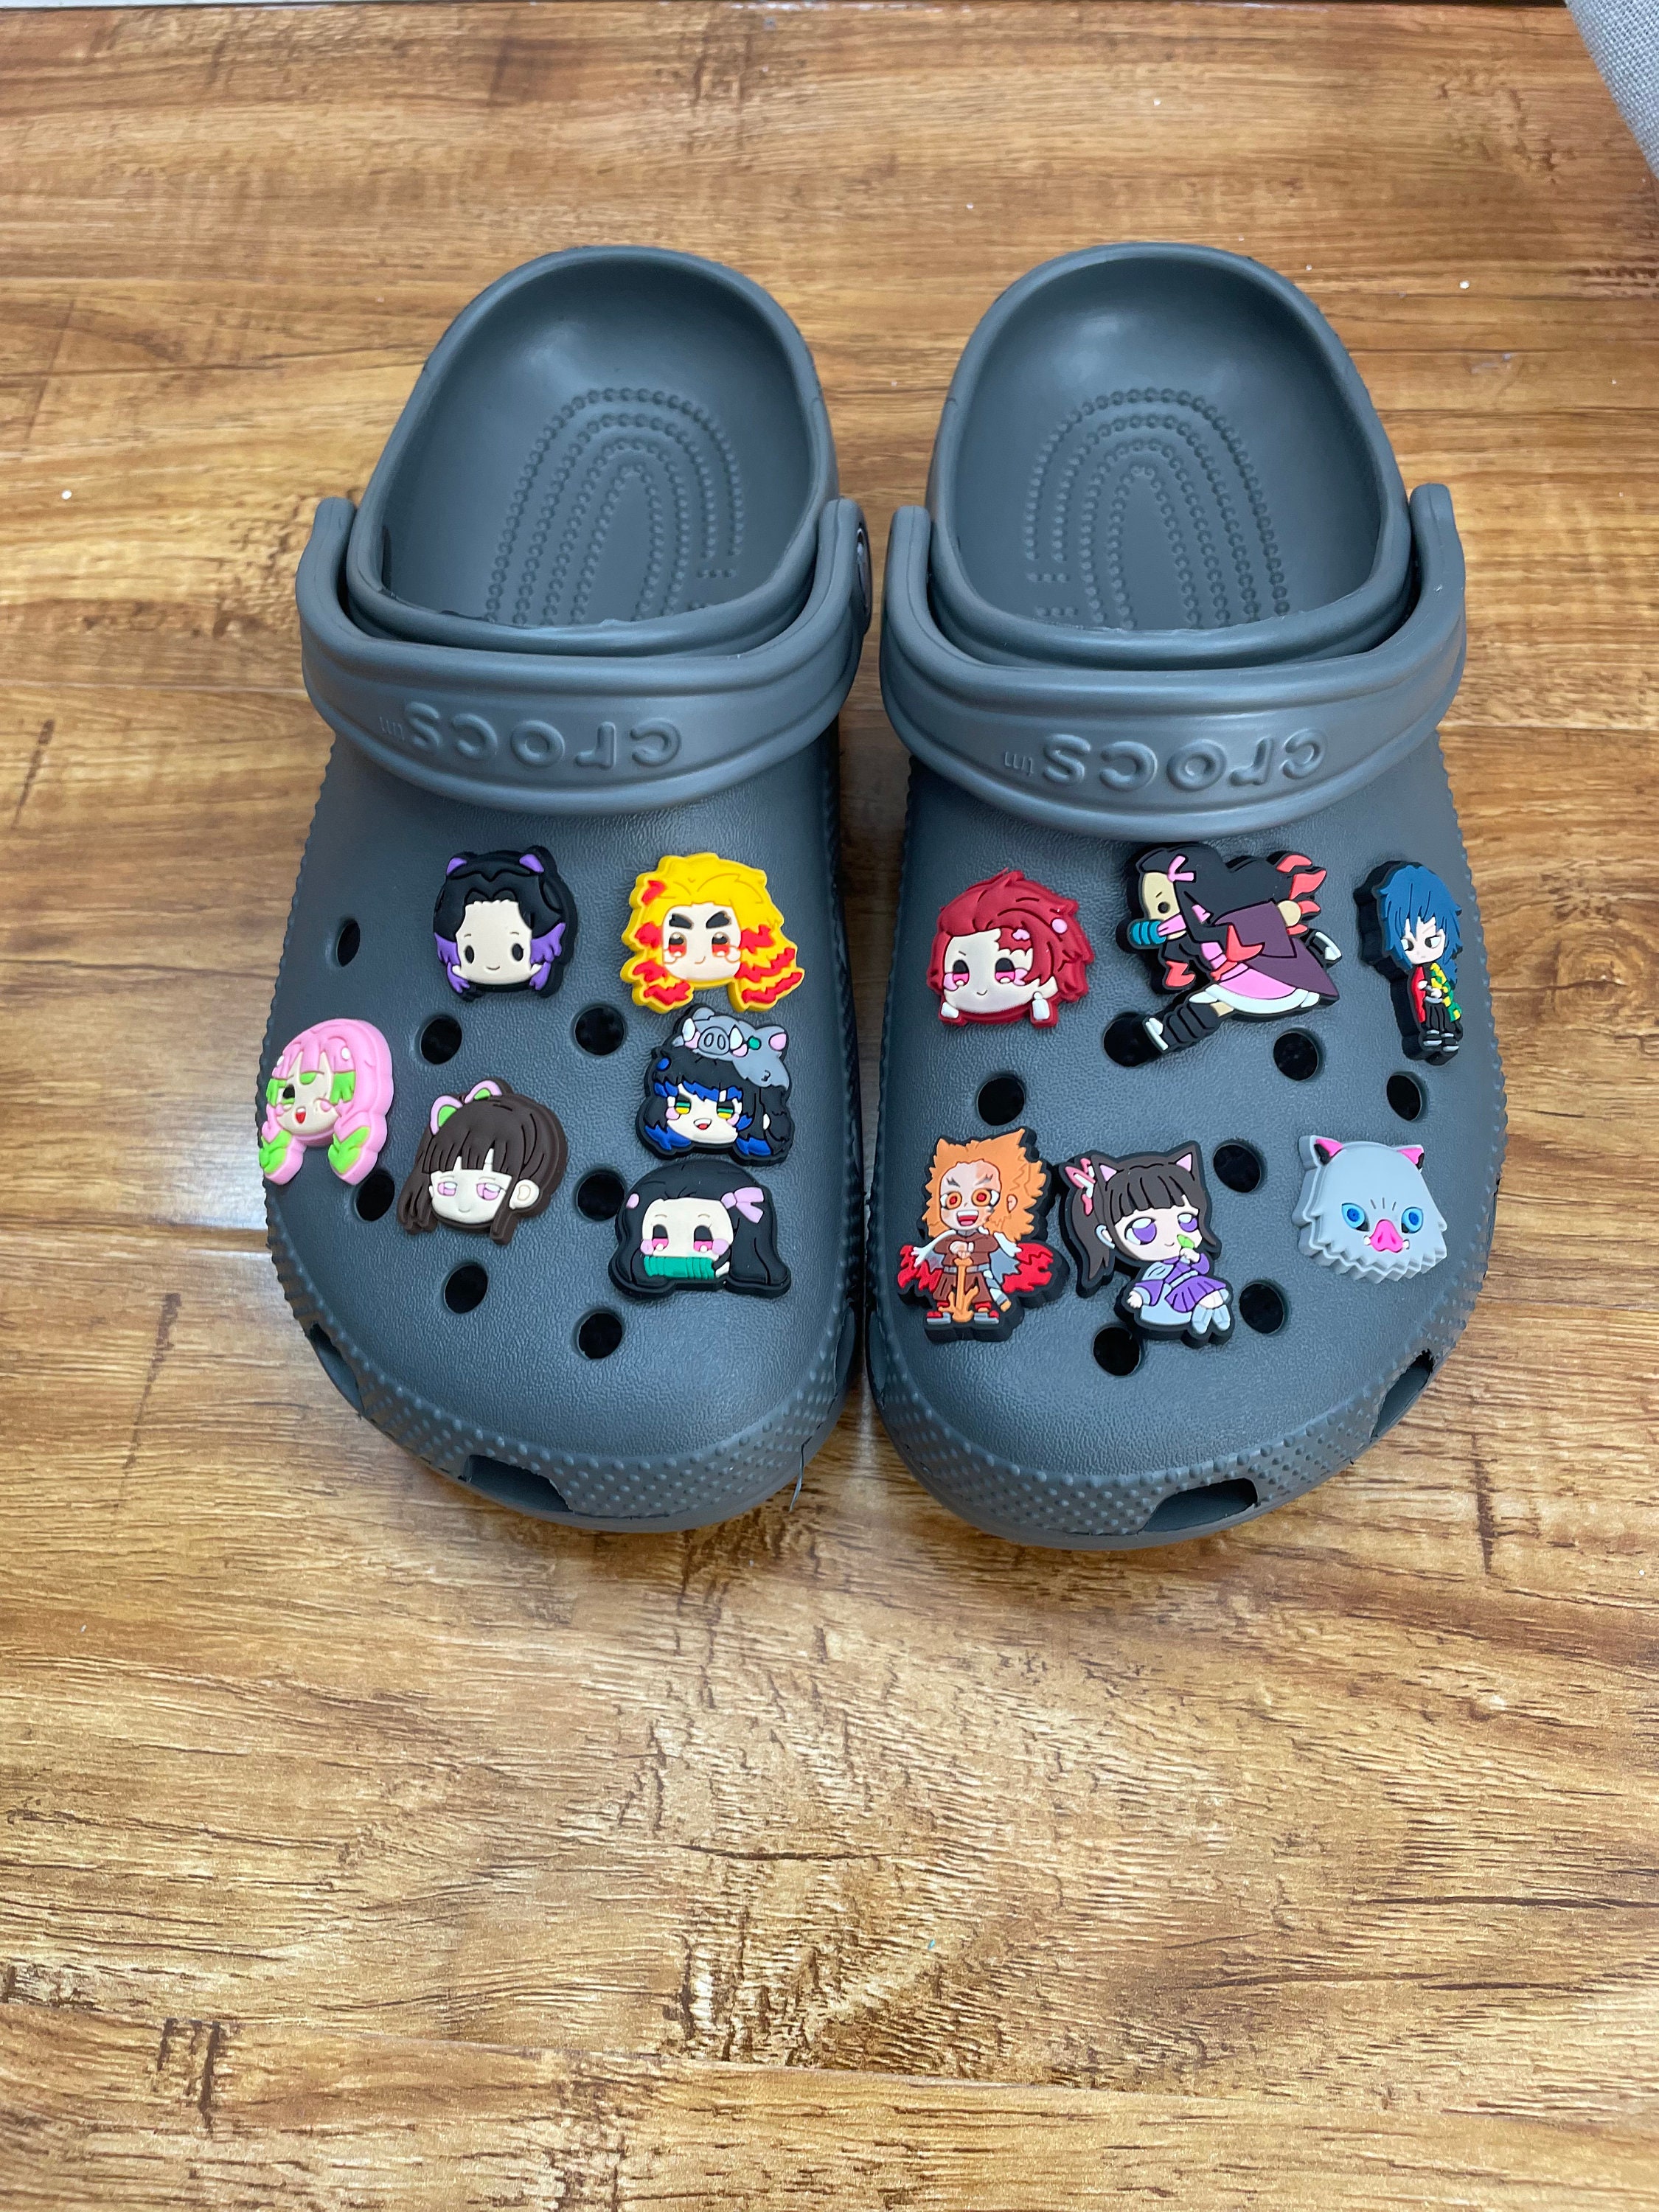 12pcs Anime Shoes Charms Shoe Decoration One Piece Shoes Charms For Diy  Croc Clog Sandals Bracelet Wristband Decoration Accessories Party Favor